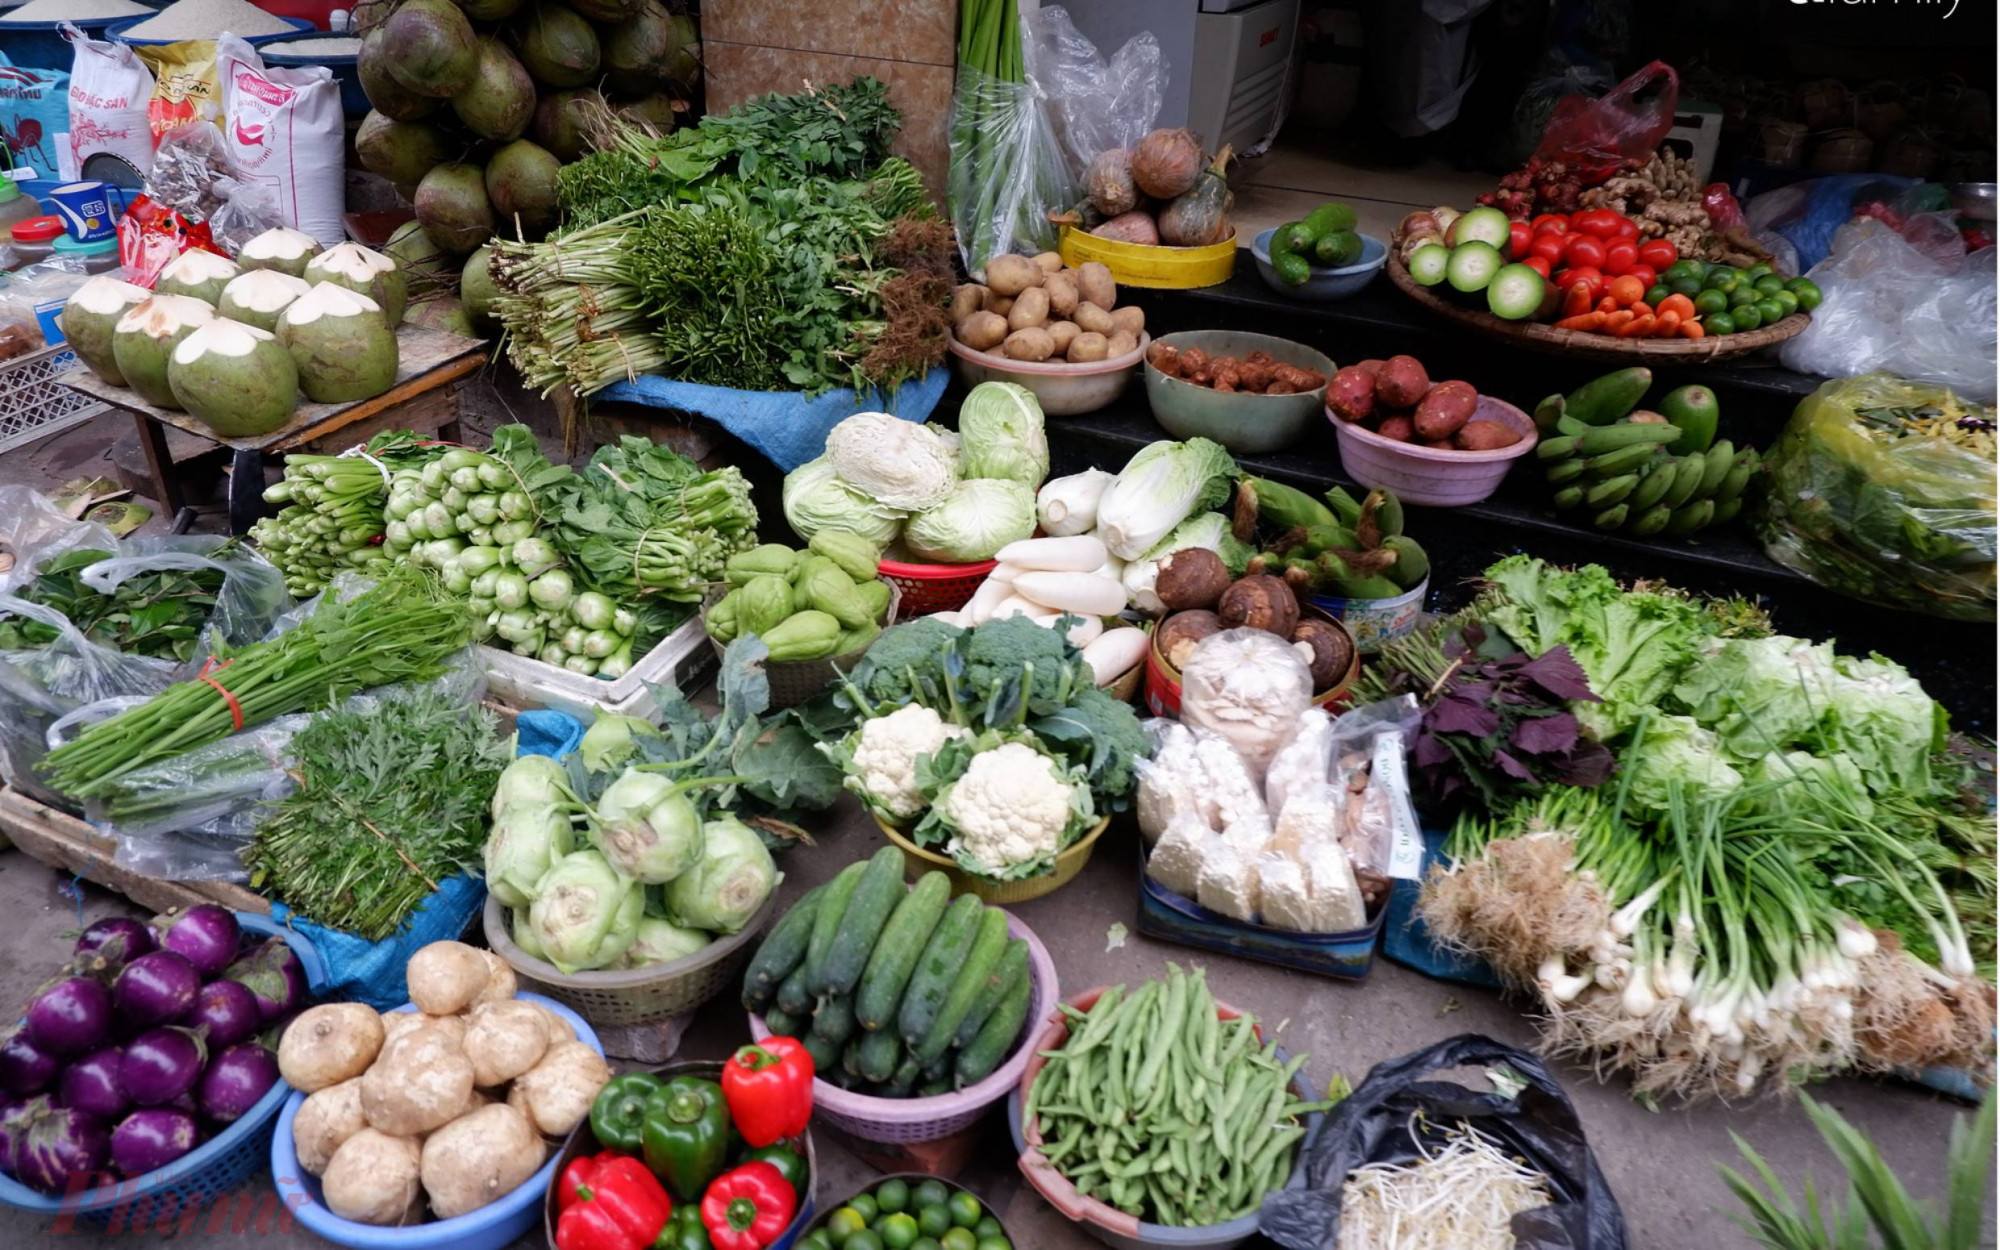 : Các sạp rau đều rơi vào tình trạng “đắt ế” do người tiêu dùng cắt giảm lượng rau xanh trong các bữa ăn